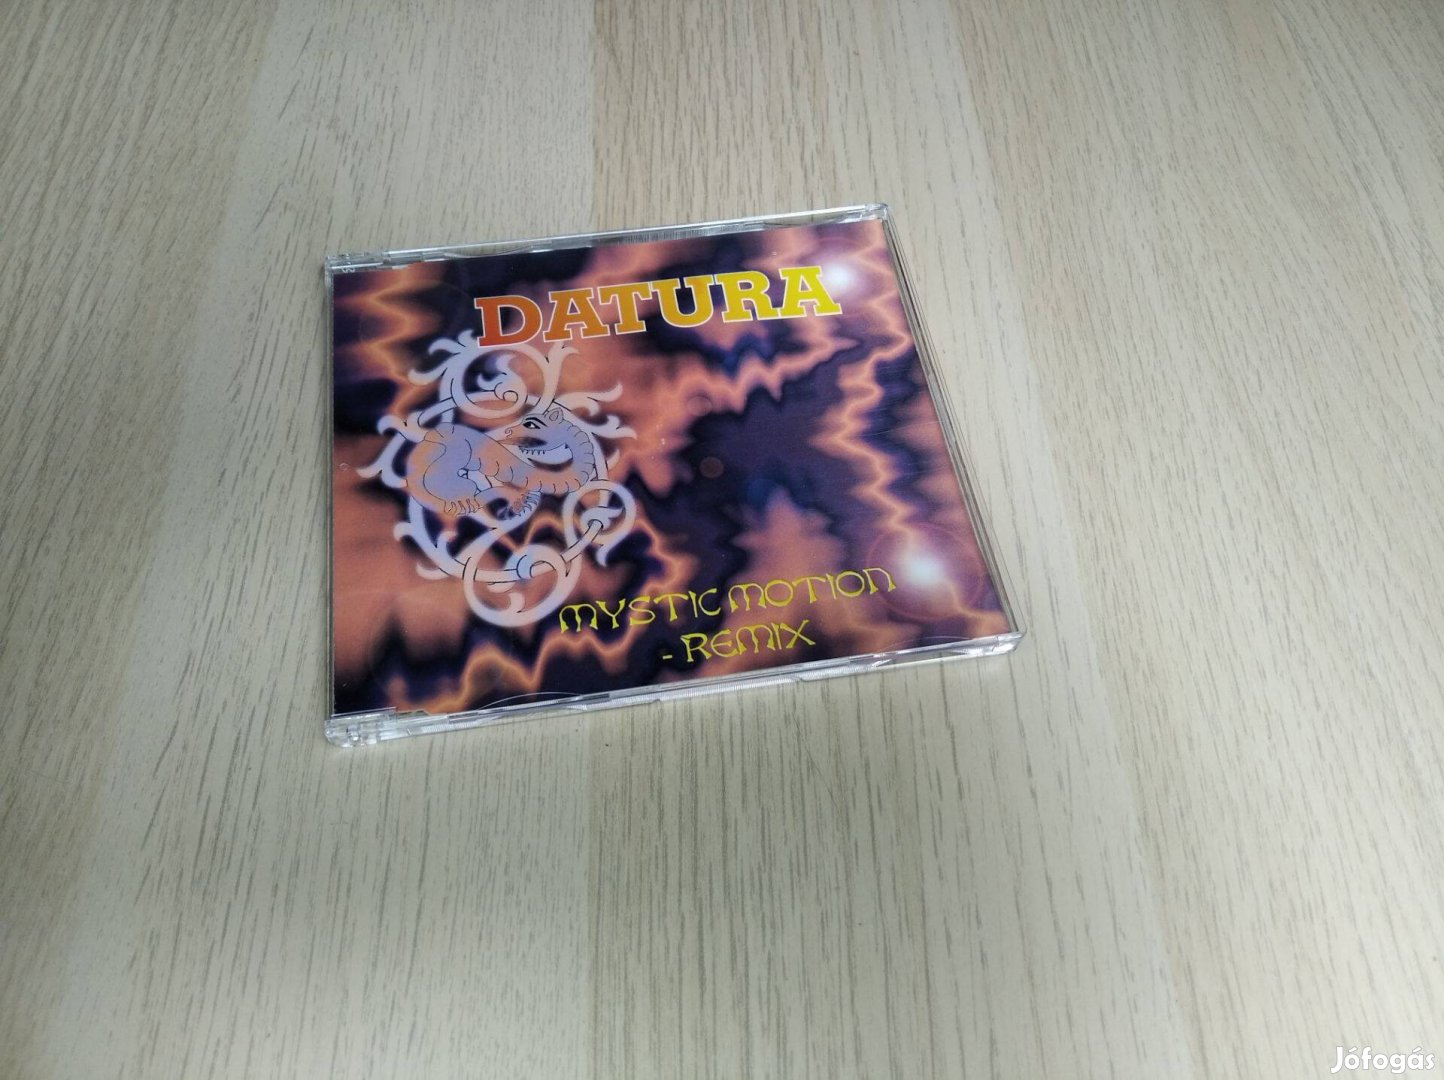 Datura - Mystic Motion (Remix) Maxi CD 1995